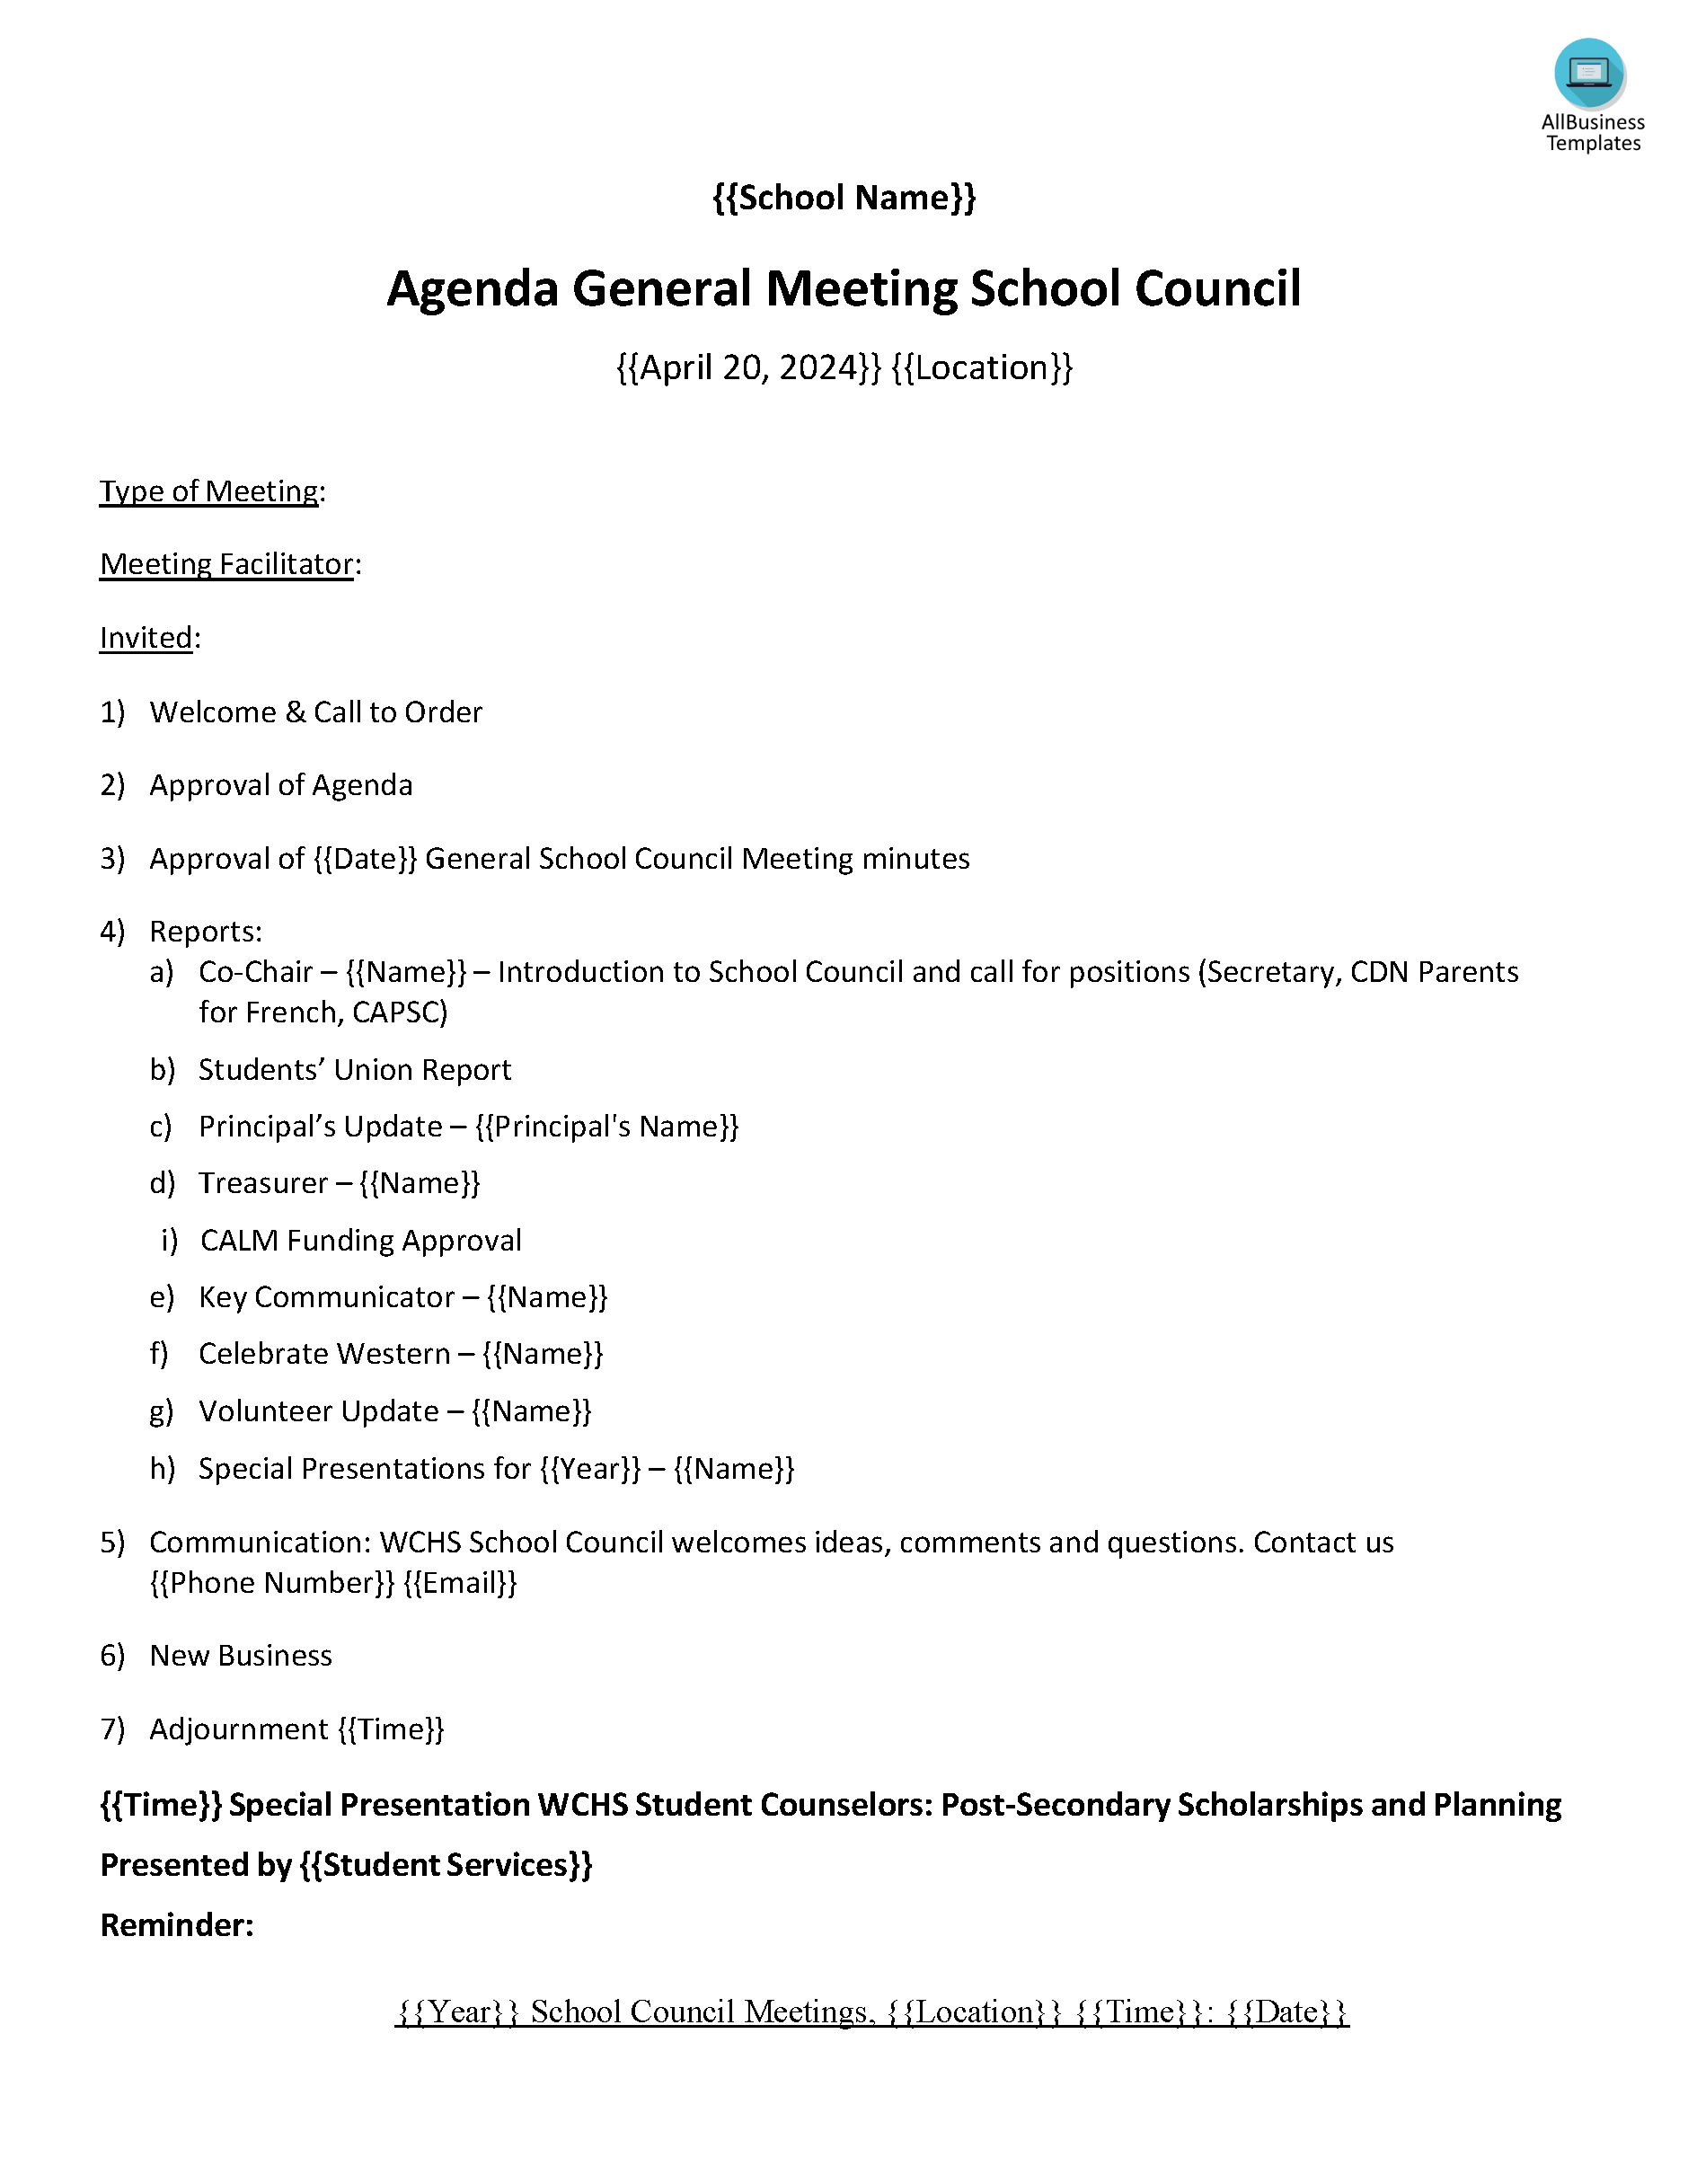 high school general agenda meeting plantilla imagen principal